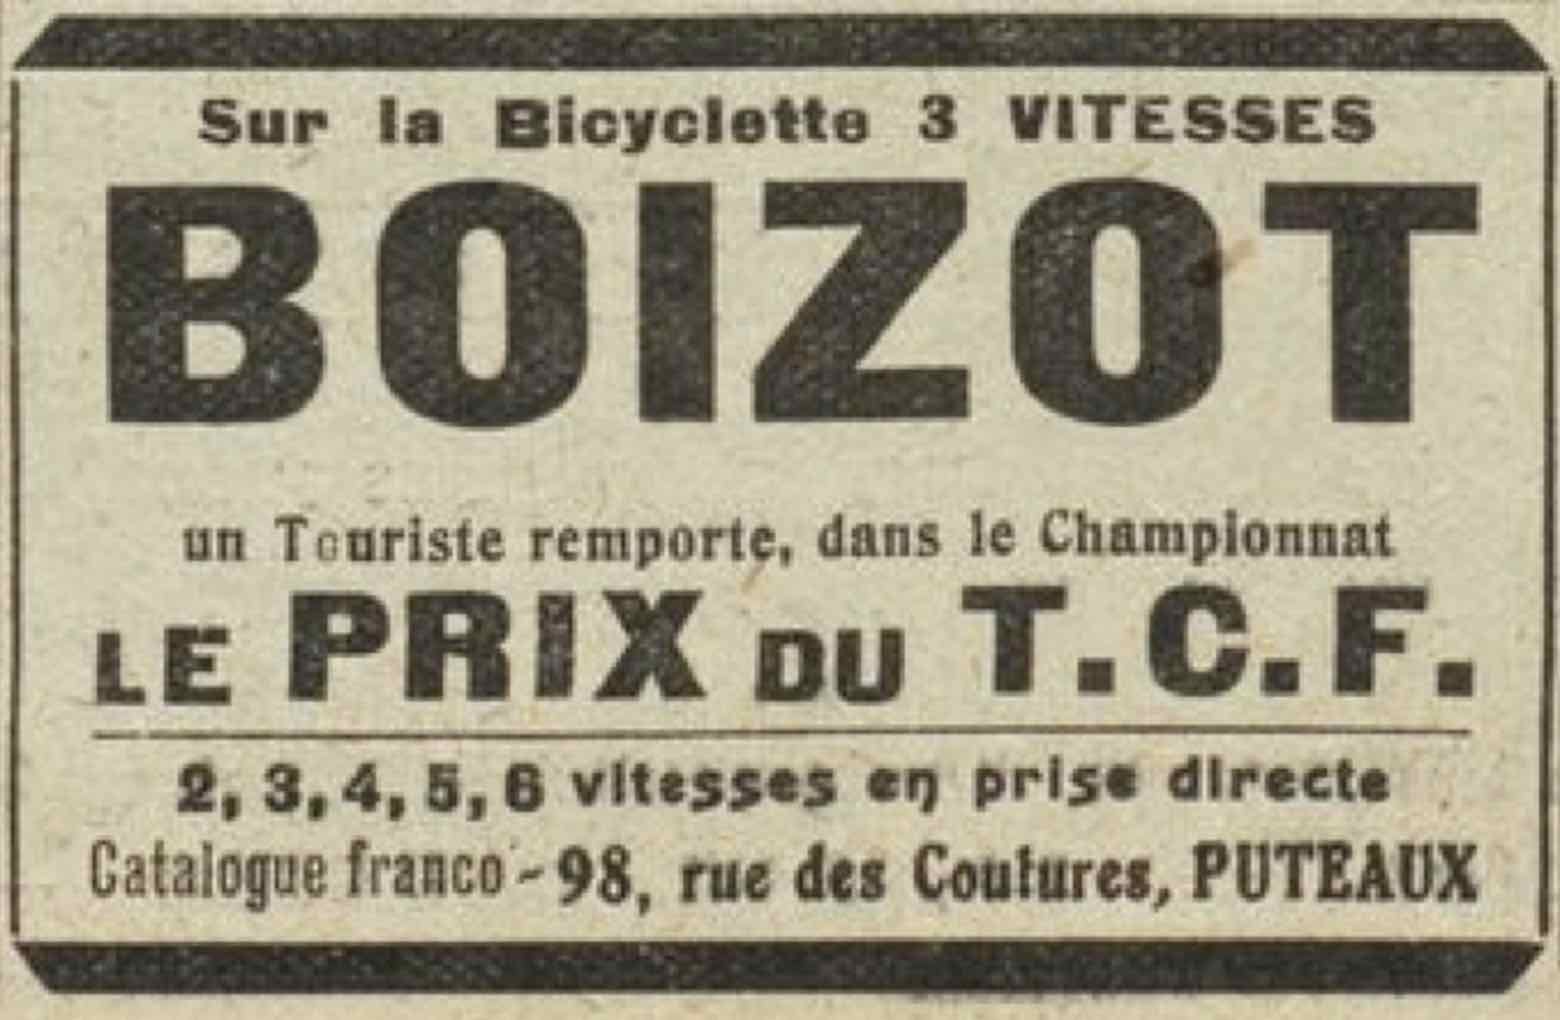 T.C.F. Revue Mensuelle June 1913 - Boizot advert main image